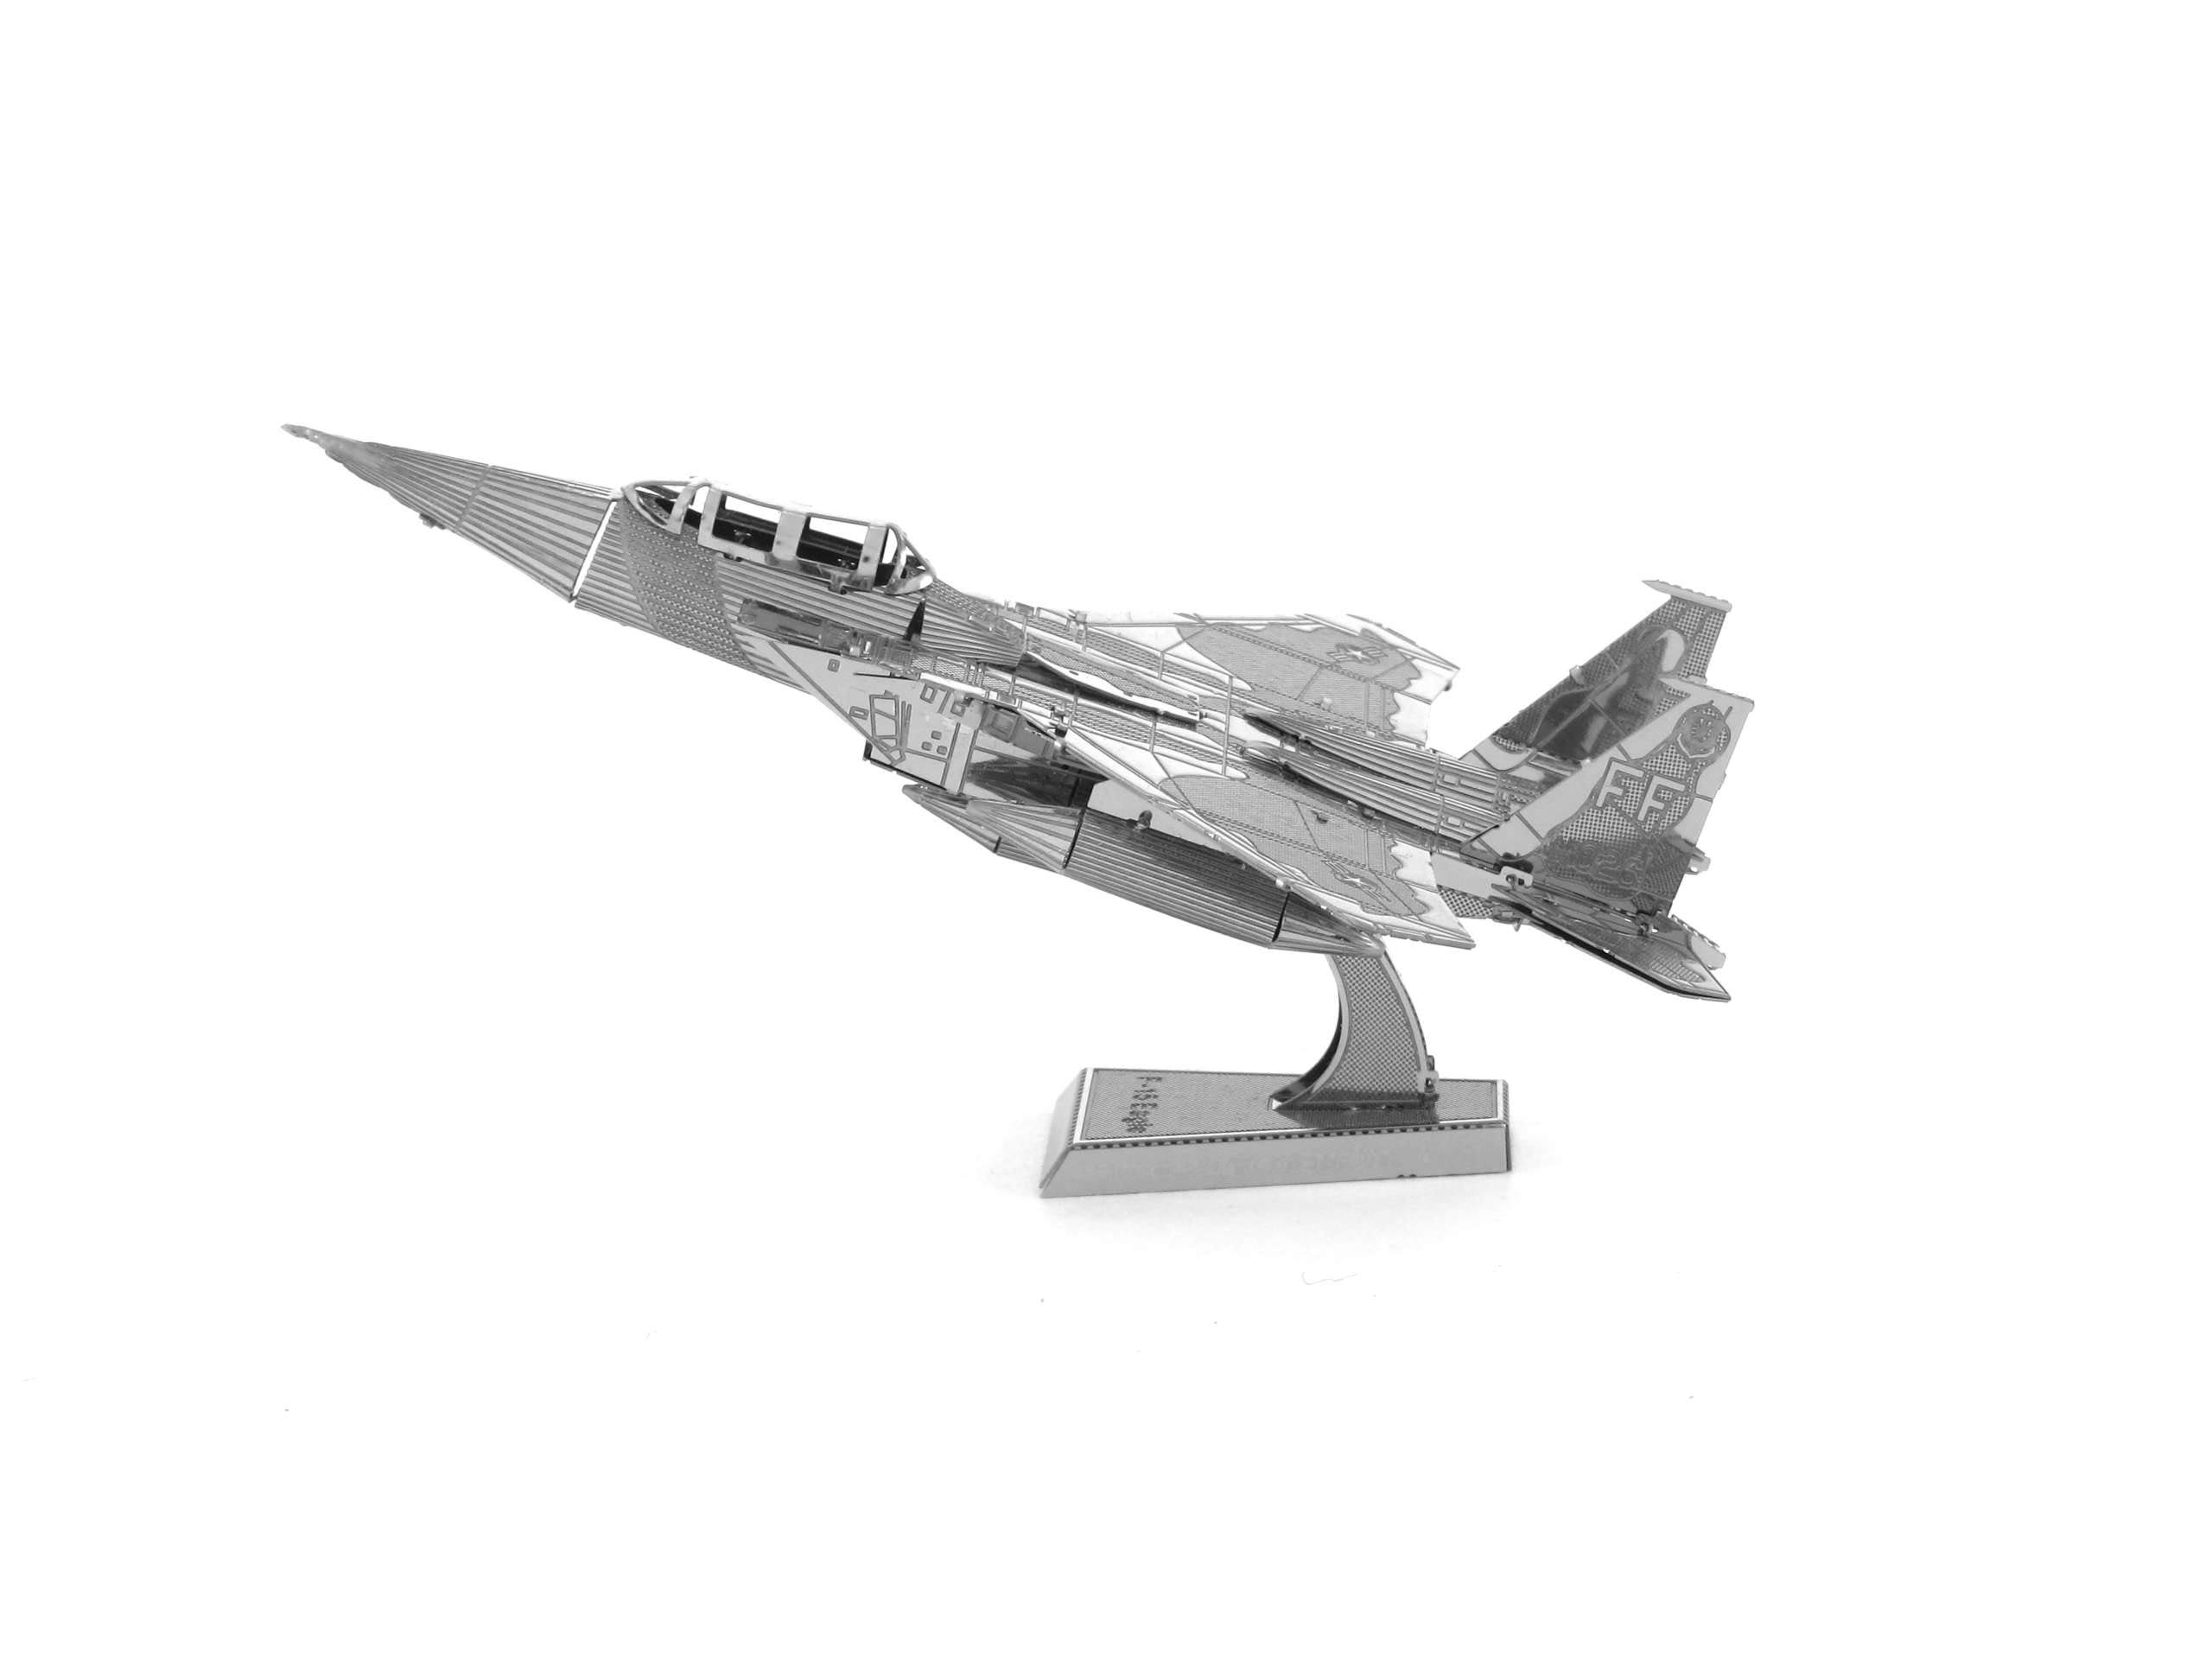 Metal Earth 3D Metal Model Kit - F 15 Eagle Fighter Jet